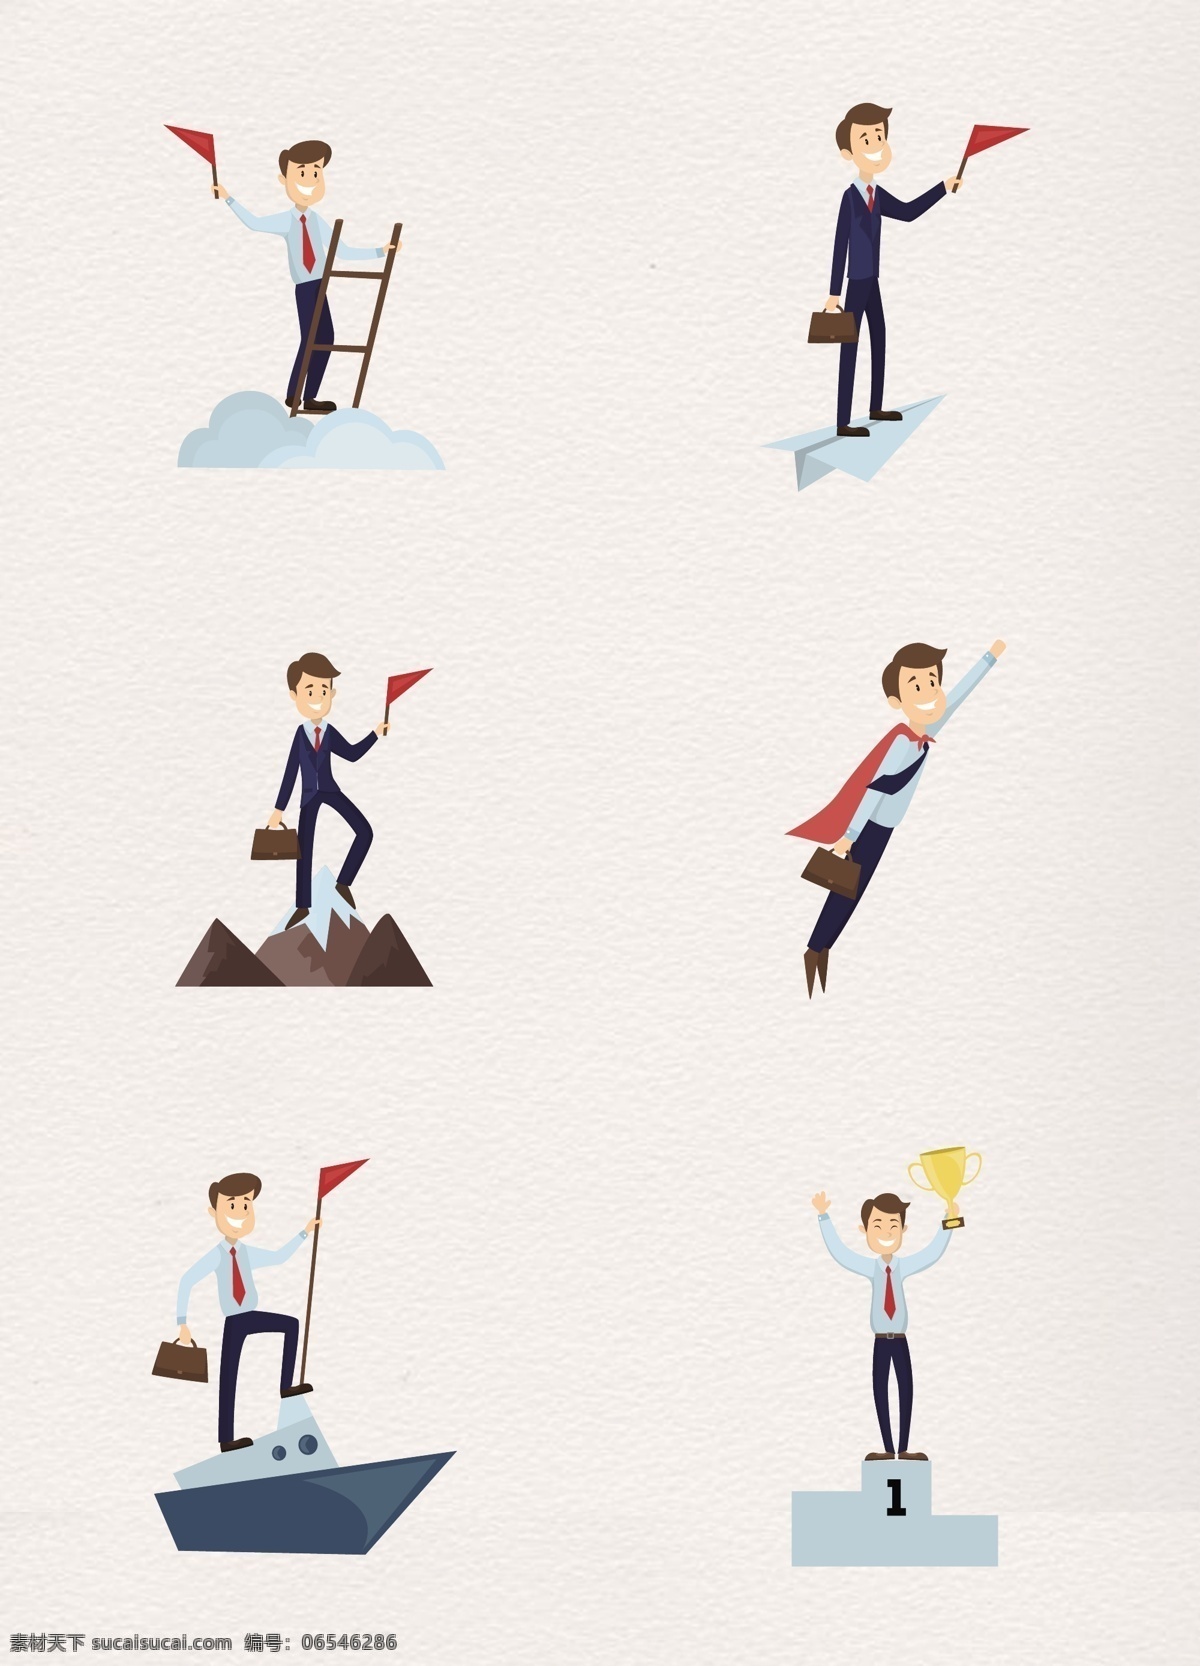 卡通 保险 业务员 商务 男子 人物 扁平化 创意 q版 超人 梯子 纸飞机 冠军 销售员